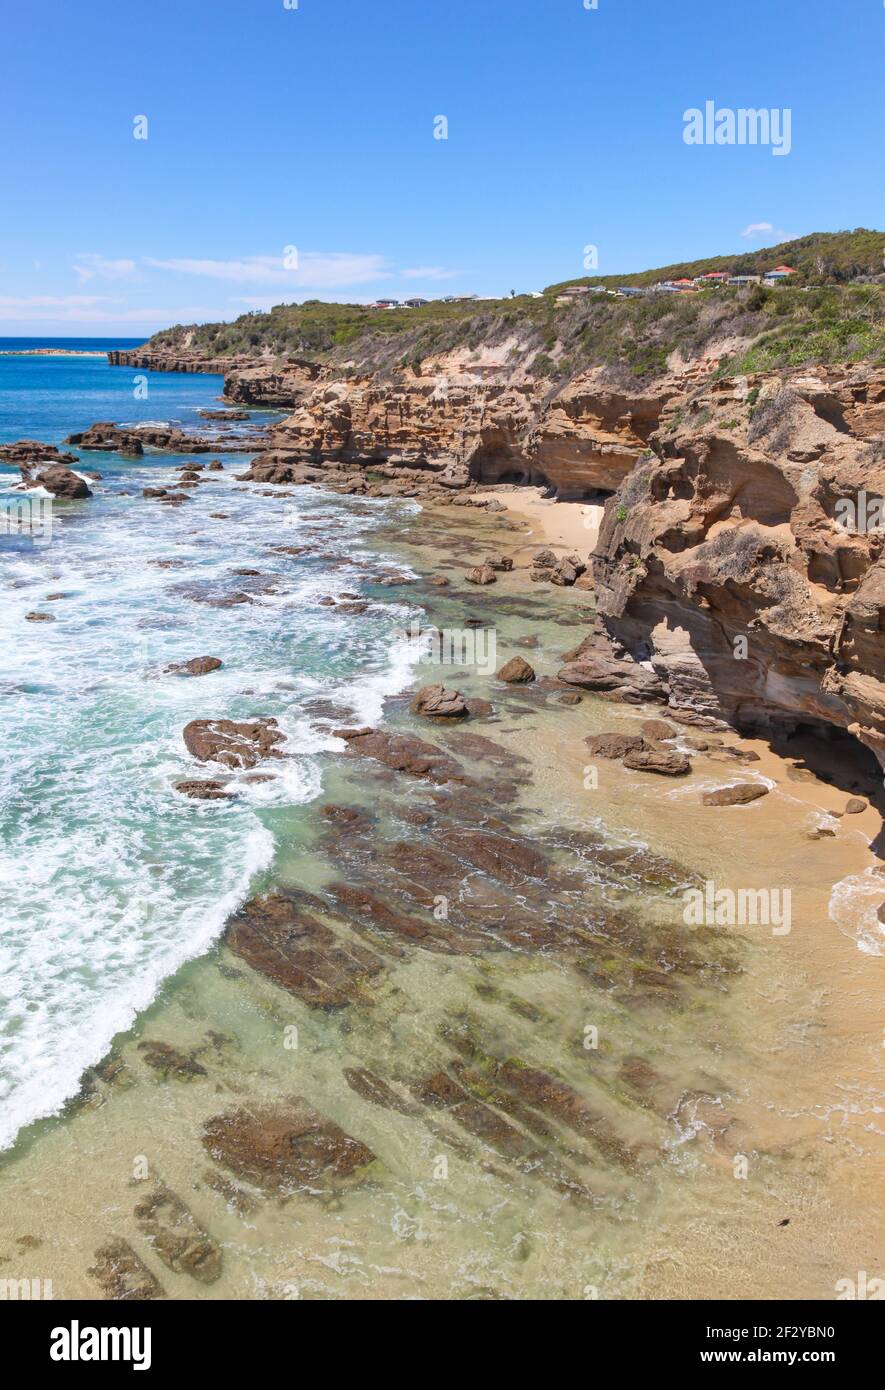 Ligne de falaises rocheuses à Caves Beach - Nouvelle-Galles du Sud Australie. Destination populaire pour des excursions d'une journée pour explorer la côte de Nouvelle-Galles du Sud au sud de Newcastle Banque D'Images